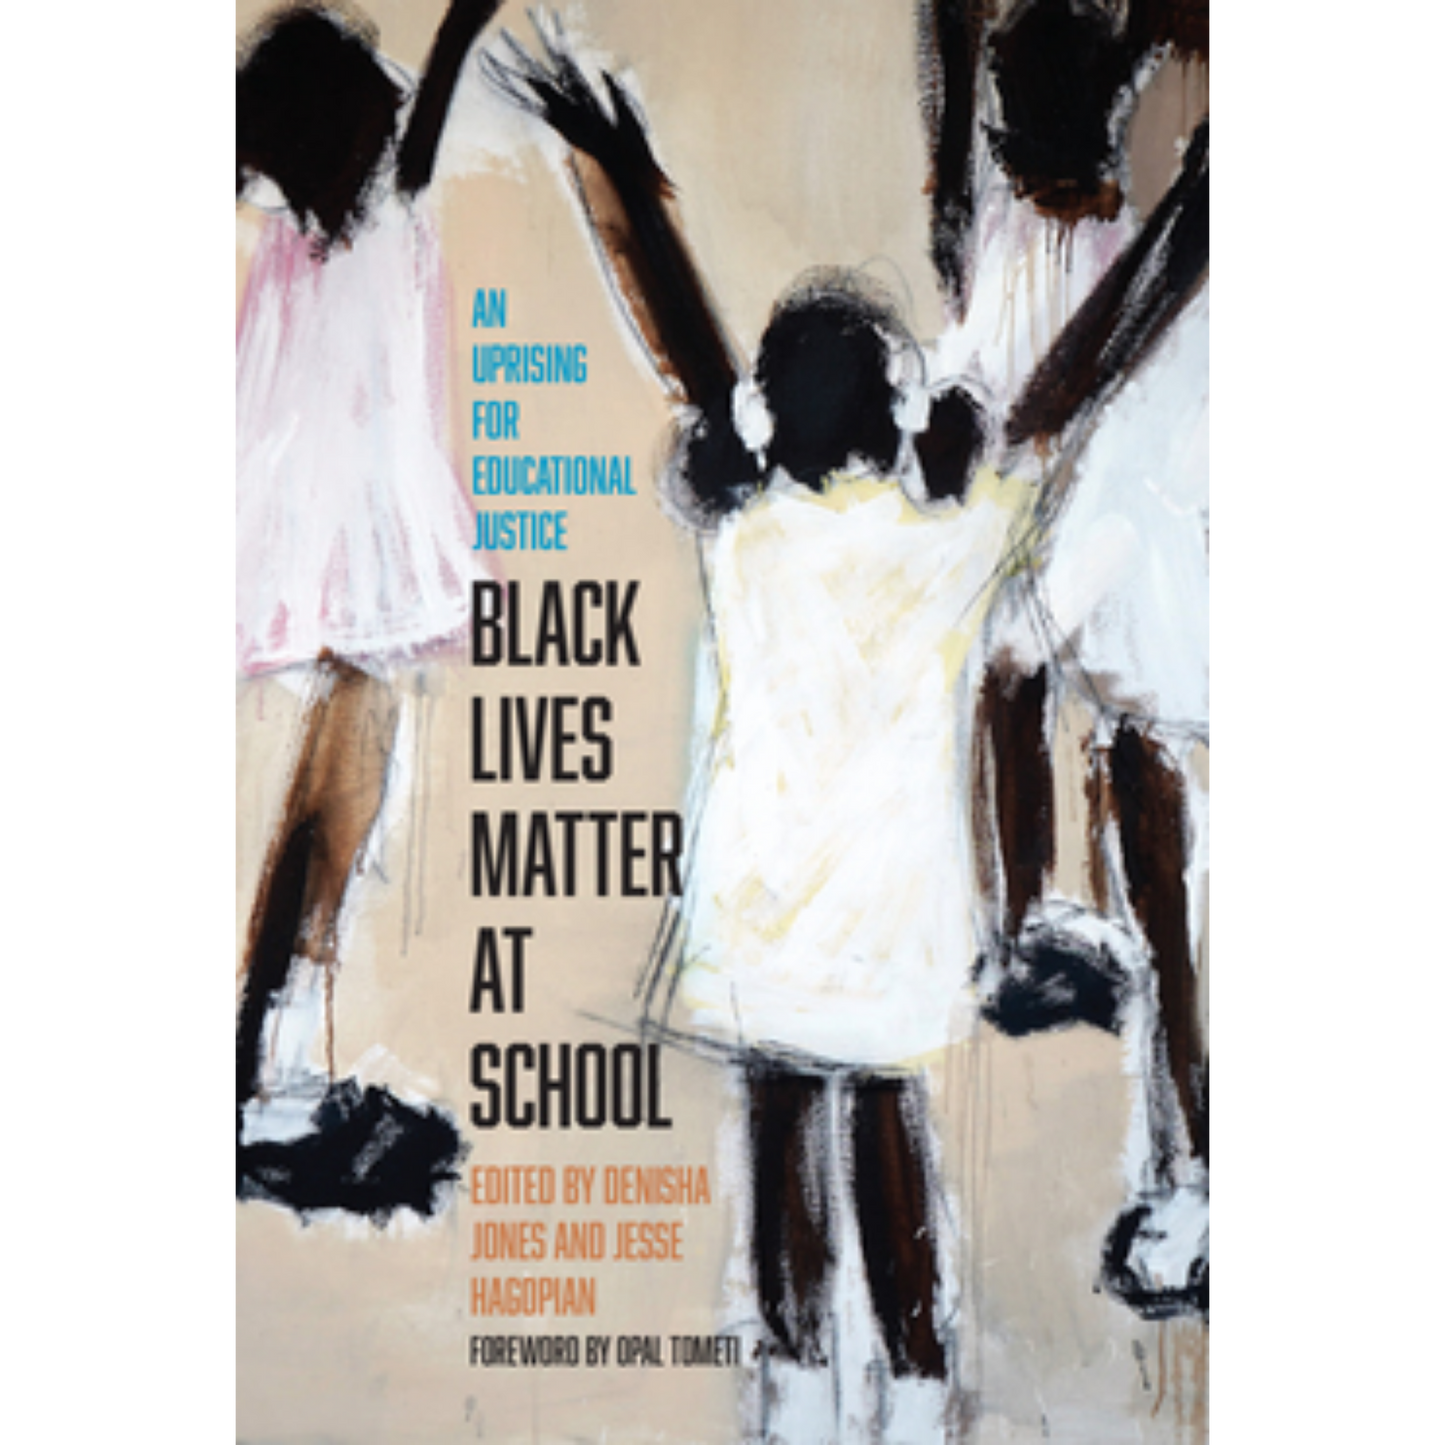 black lives matter at school denisha jones jesse hagopian